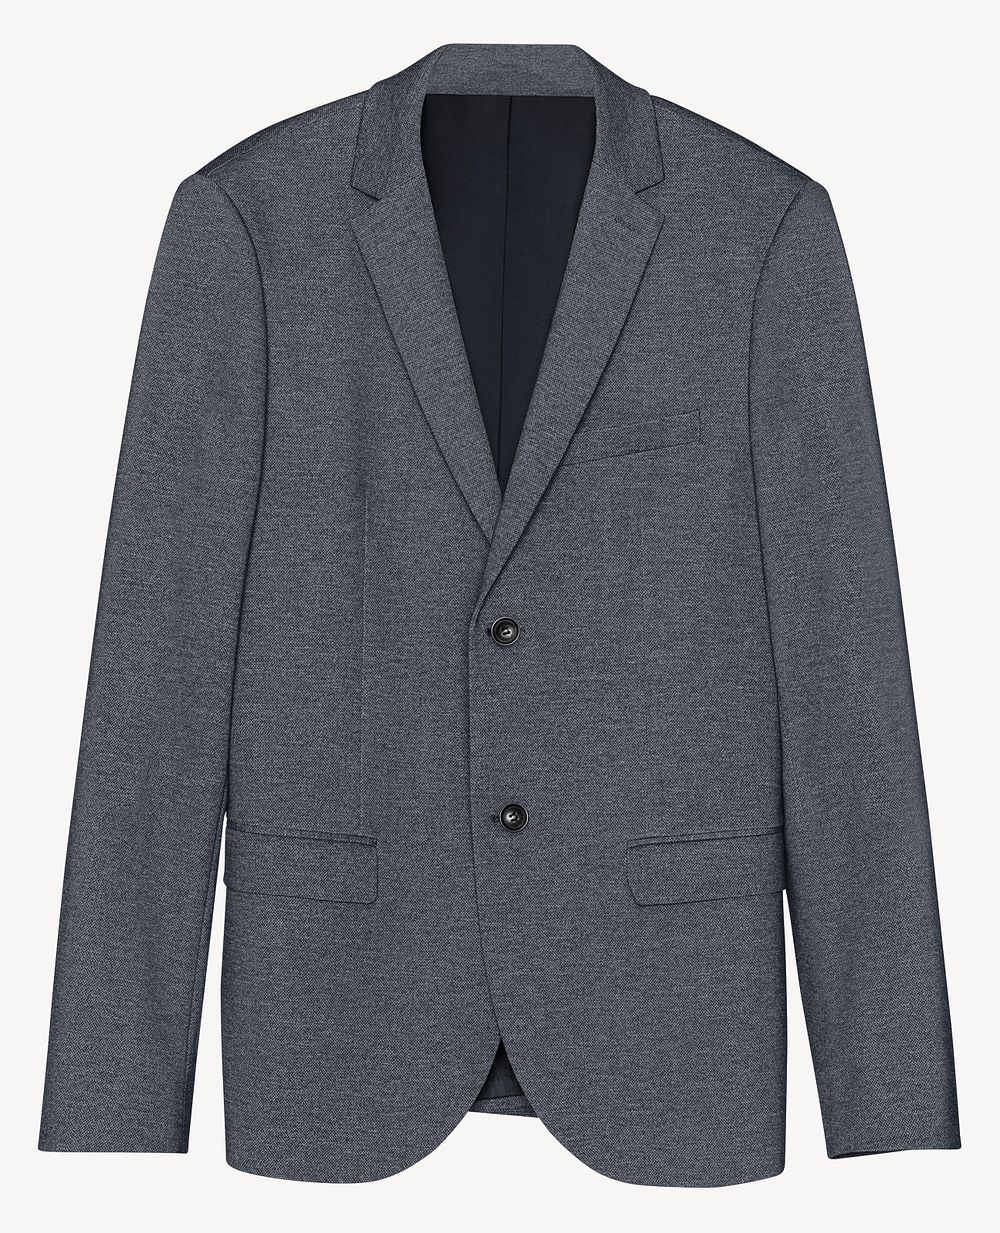 Men's gray suit, business attire design